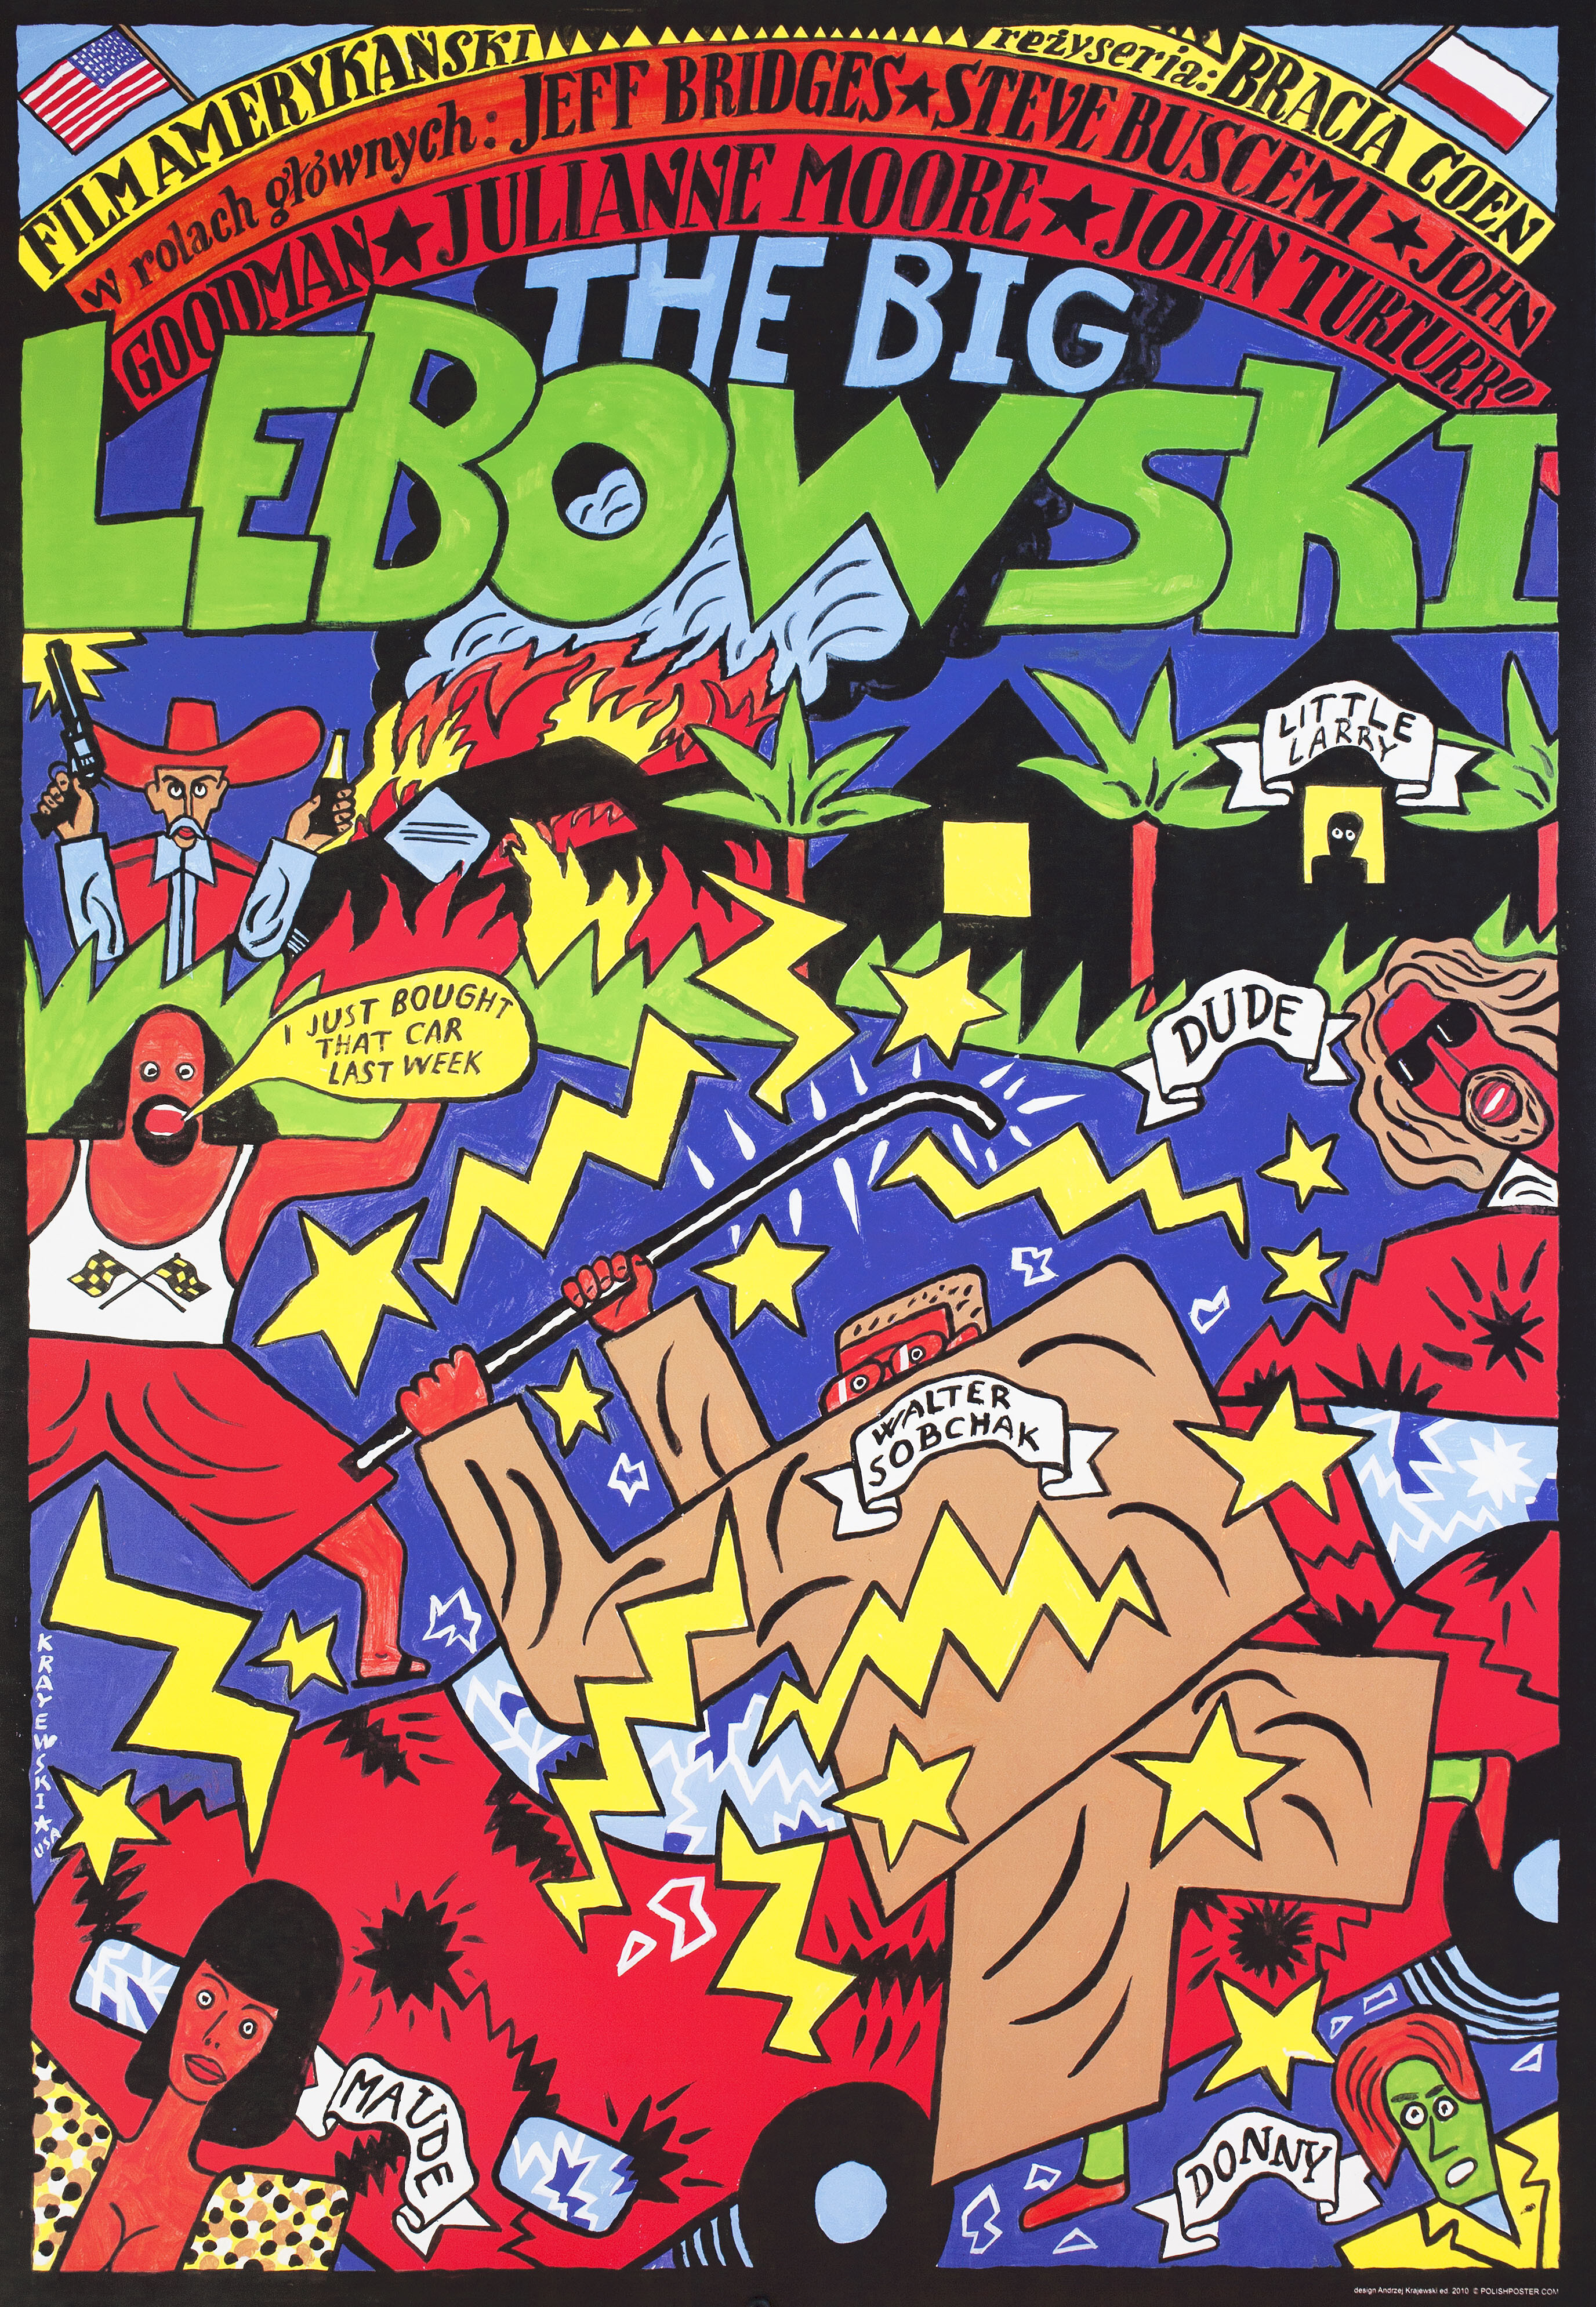 Большой Лебовски (The Big Lebowski, 1998), режиссёр Братья Коэн, польский постер к фильму, Анджей Краевский художник (психоделическое искусство, 2010 год)